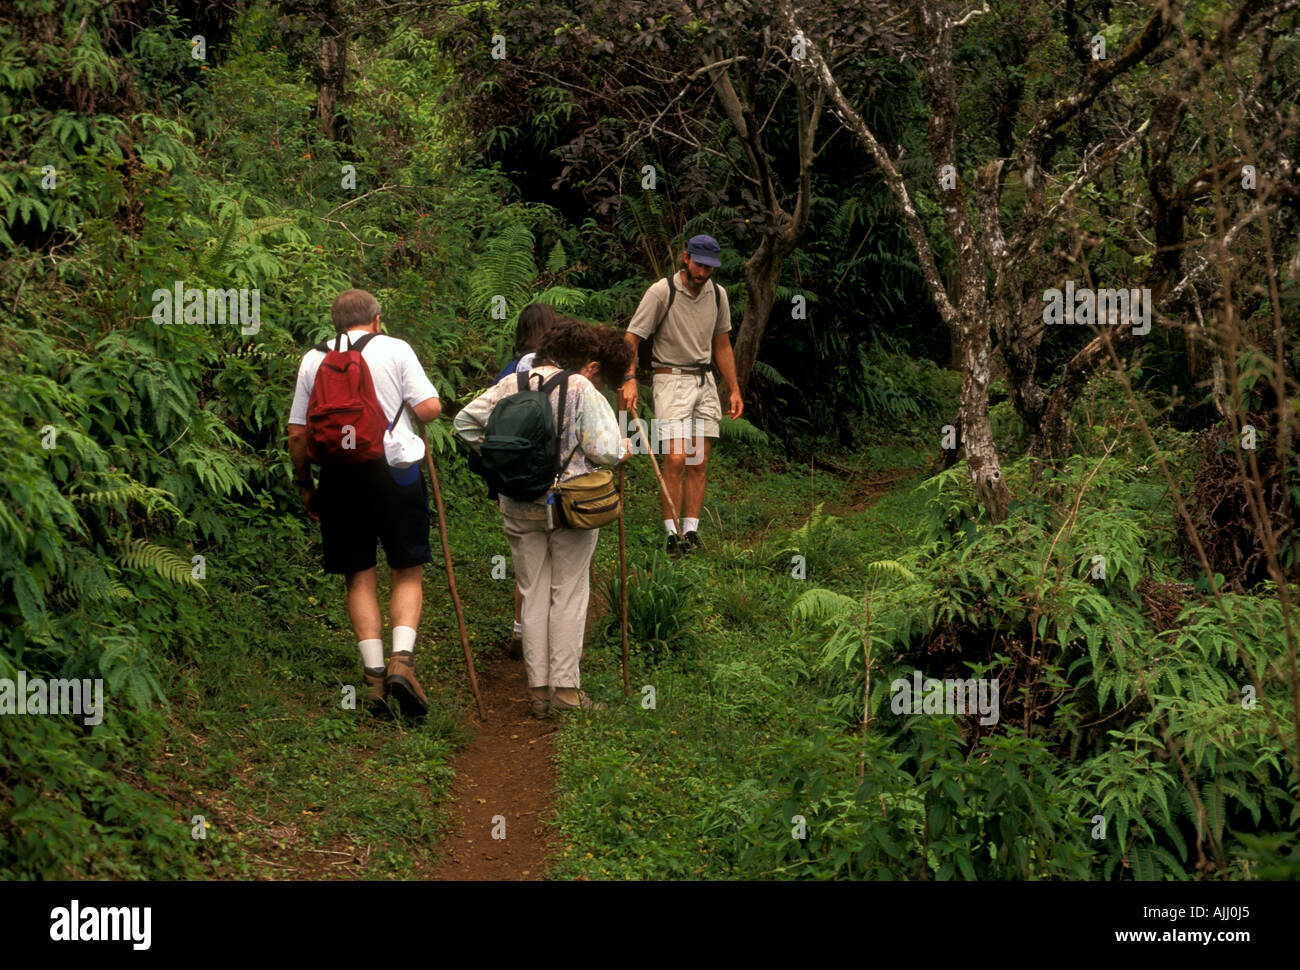 people, tourists, hiker, hikers, hiking trail, hiking, between Makamakaole Valley and Waihee Valley, West Maui Mountains, West Maui, Maui, Hawaii Stock Photo